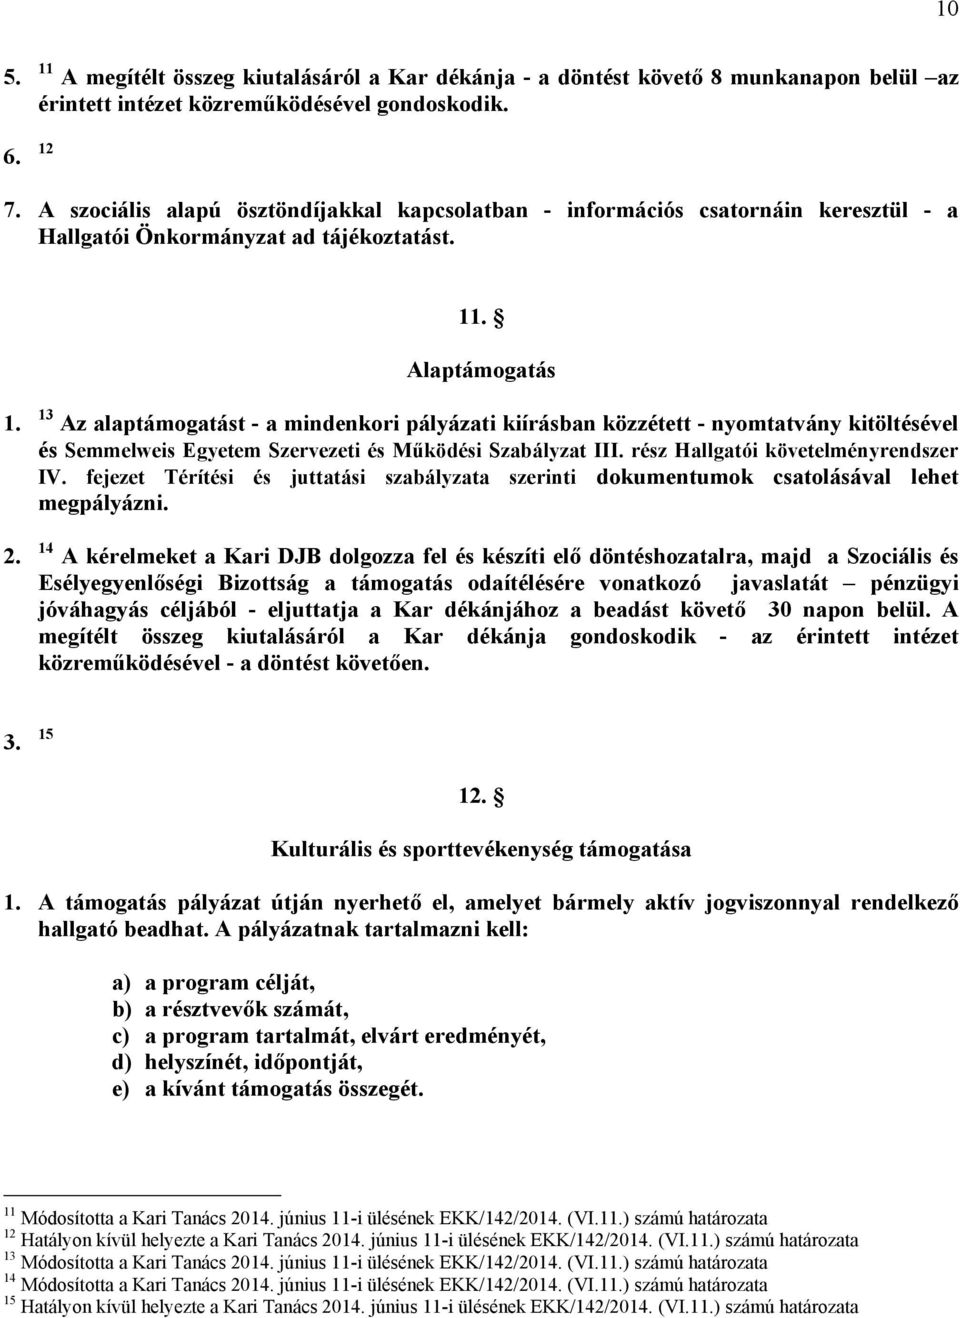 13 Az alaptámogatást - a mindenkori pályázati kiírásban közzétett - nyomtatvány kitöltésével és Semmelweis Egyetem Szervezeti és Működési Szabályzat III. rész Hallgatói követelményrendszer IV.